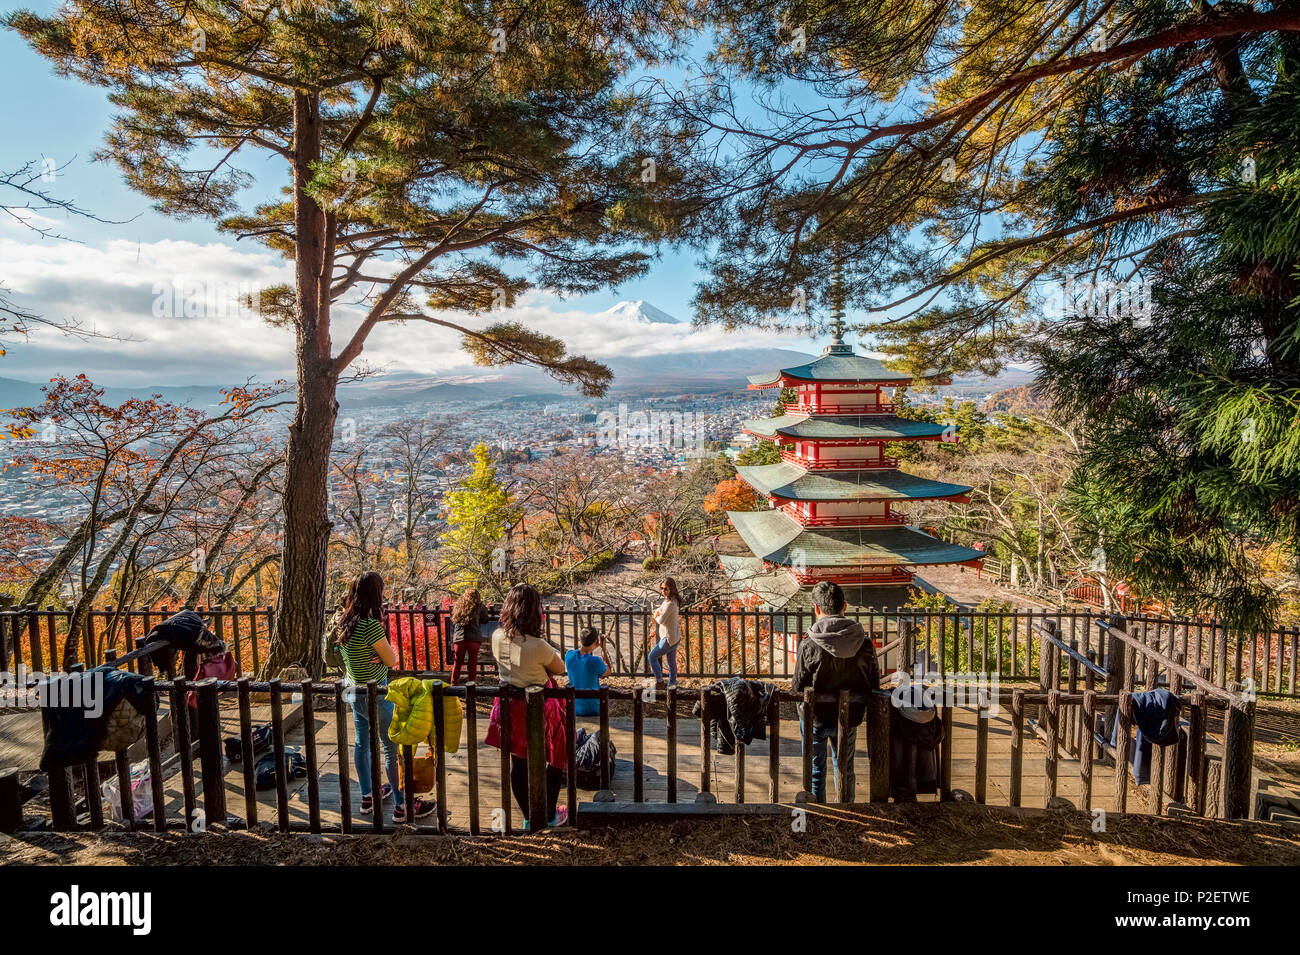 Los turistas procedentes de Asia disfrutar tomando fotos de Mt. Fuji y Chureito Pagoda en otoño, Fujiyoshida, prefectura de Yamanashi, Japón Foto de stock